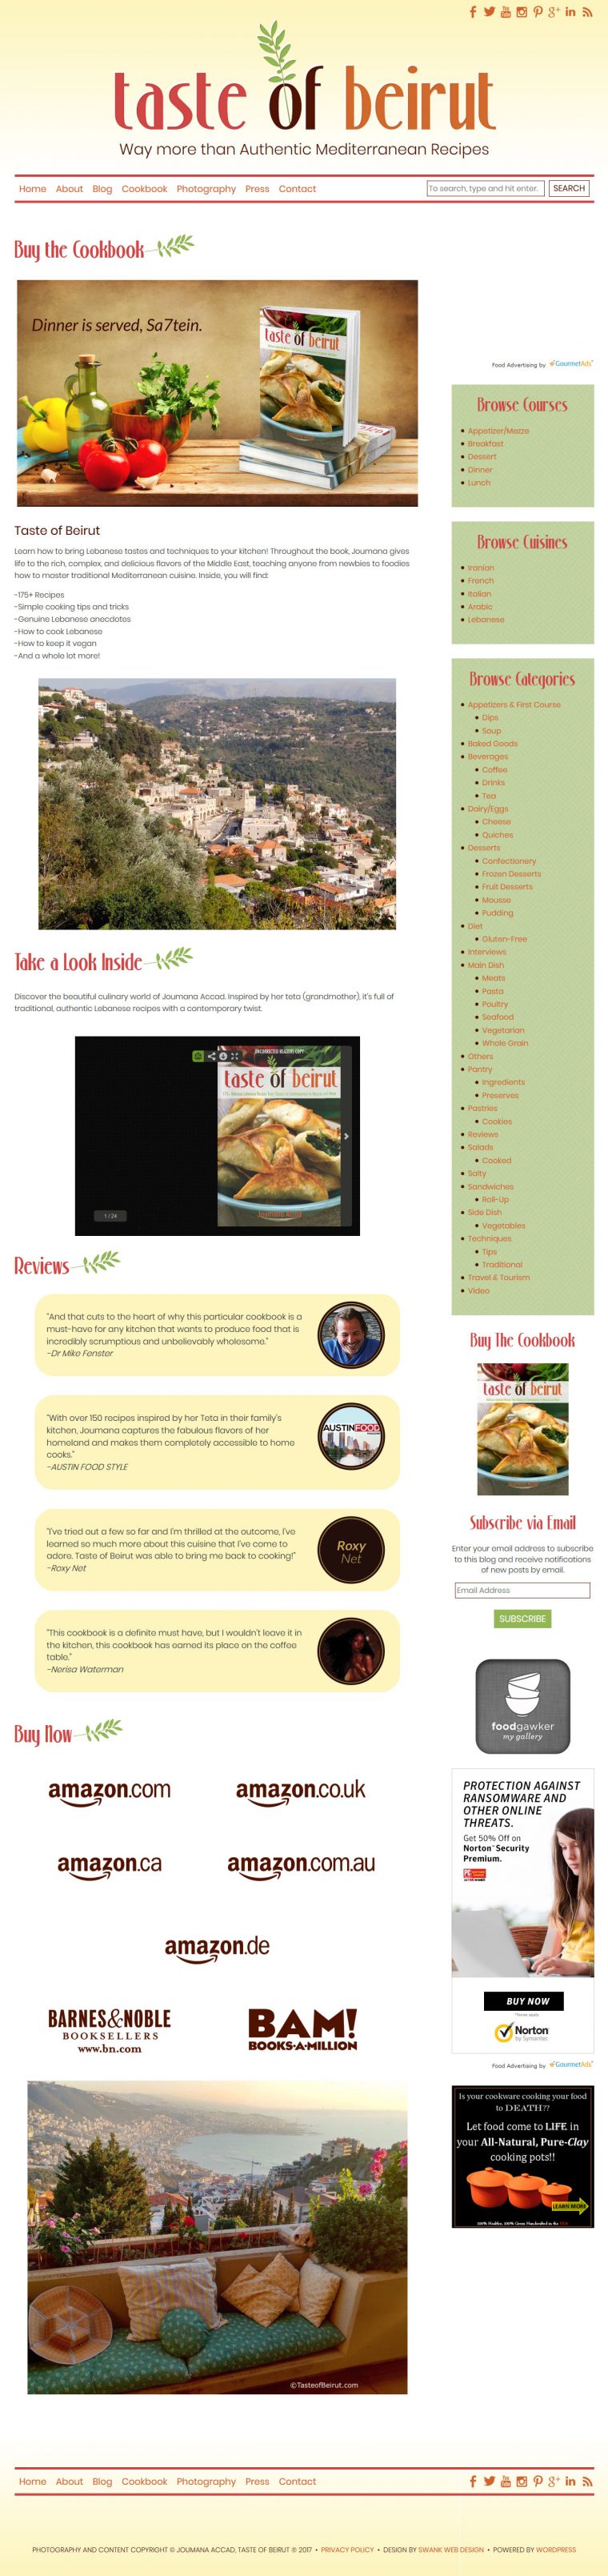 Website and Blog Design for Taste of Beirut by Swank Web Design